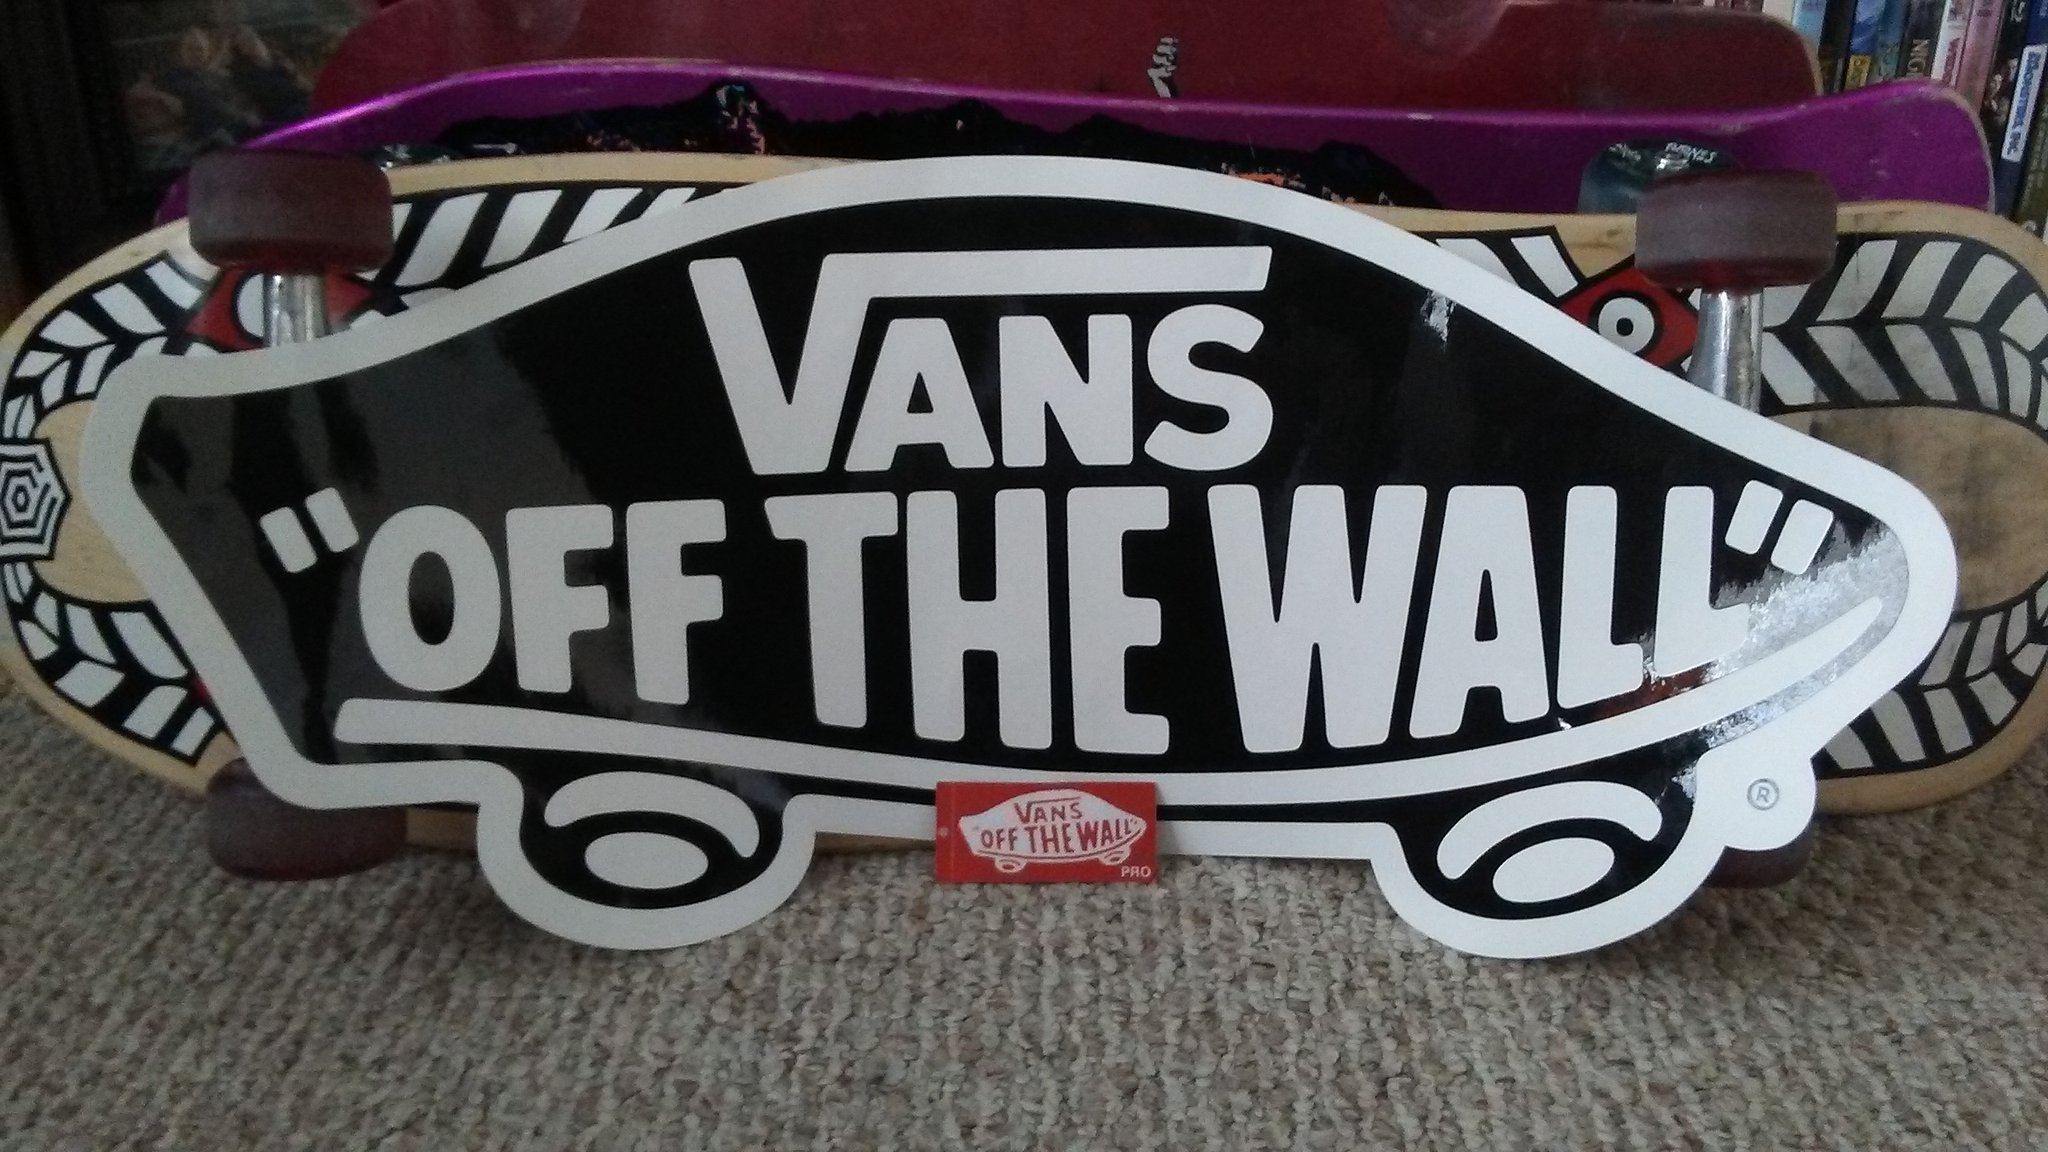 ramp sticker is amazing!! @VANS_66 